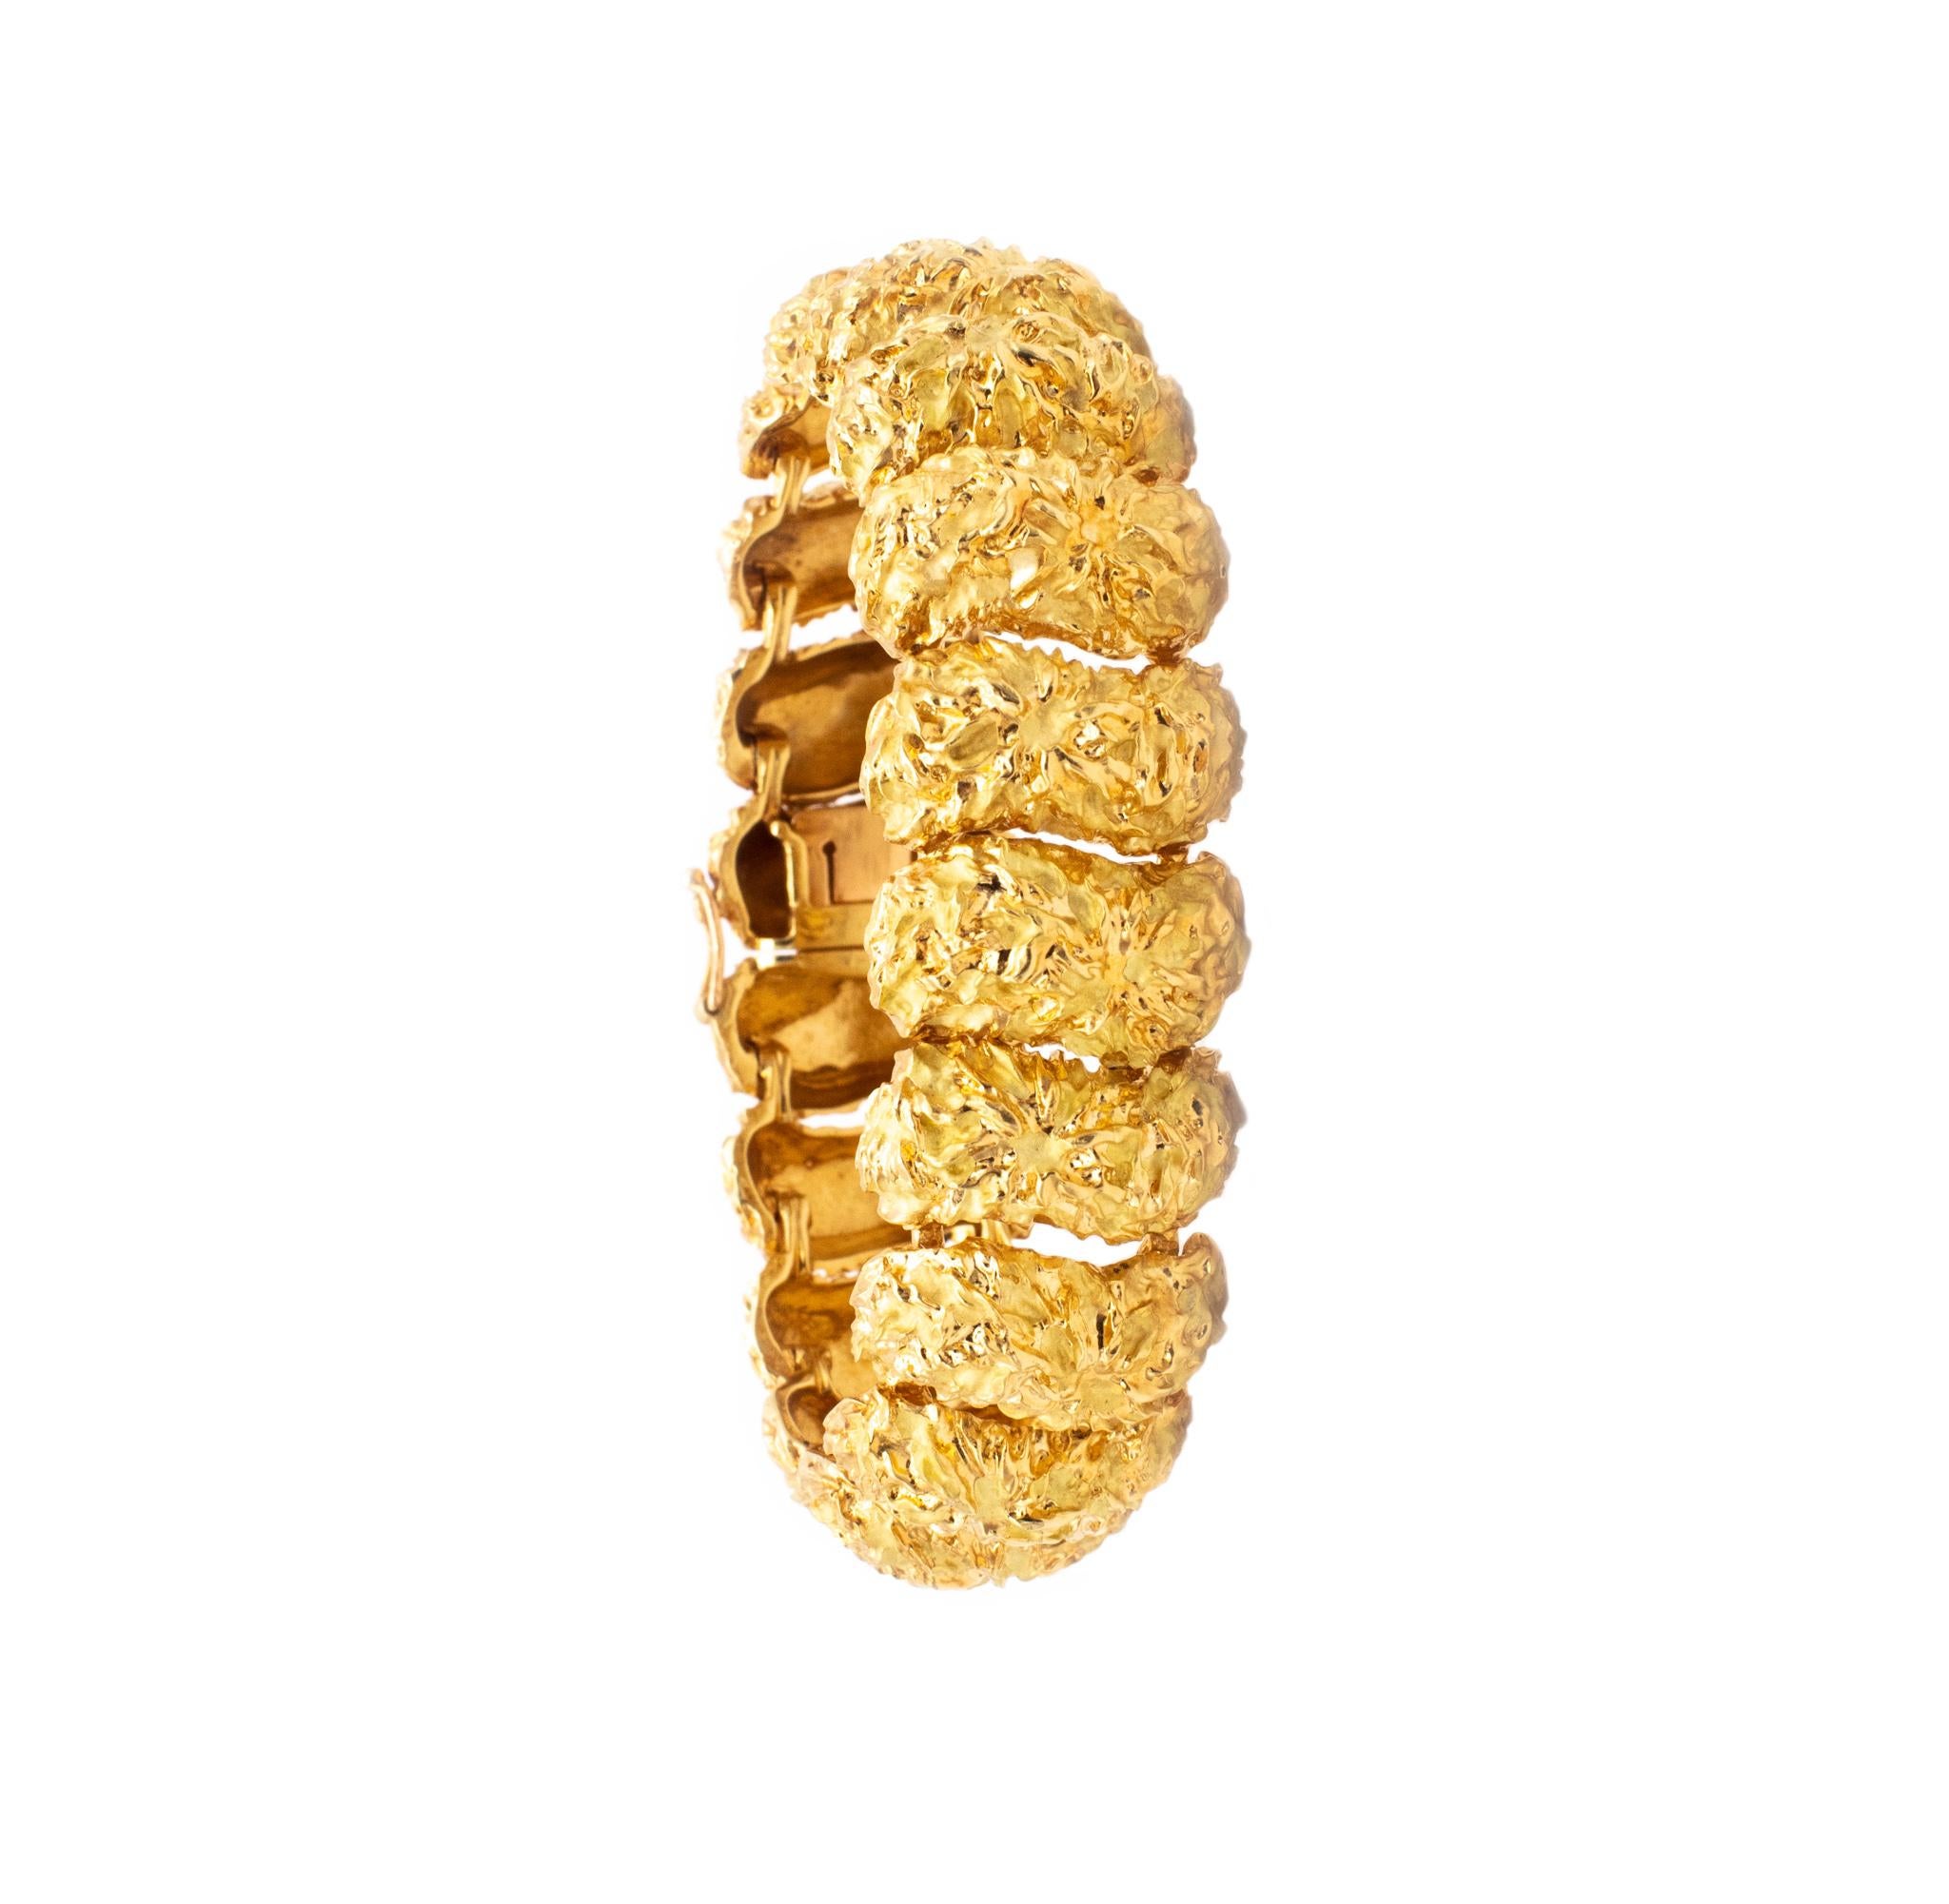 Bracelet texturé conçu par Marchak Paris.

Un bel exemple de la joaillerie française de la période du milieu du siècle. Ce bracelet a été fabriqué, vers les années 1960, en or jaune massif de 18 carats, avec des surfaces très texturées. Le design